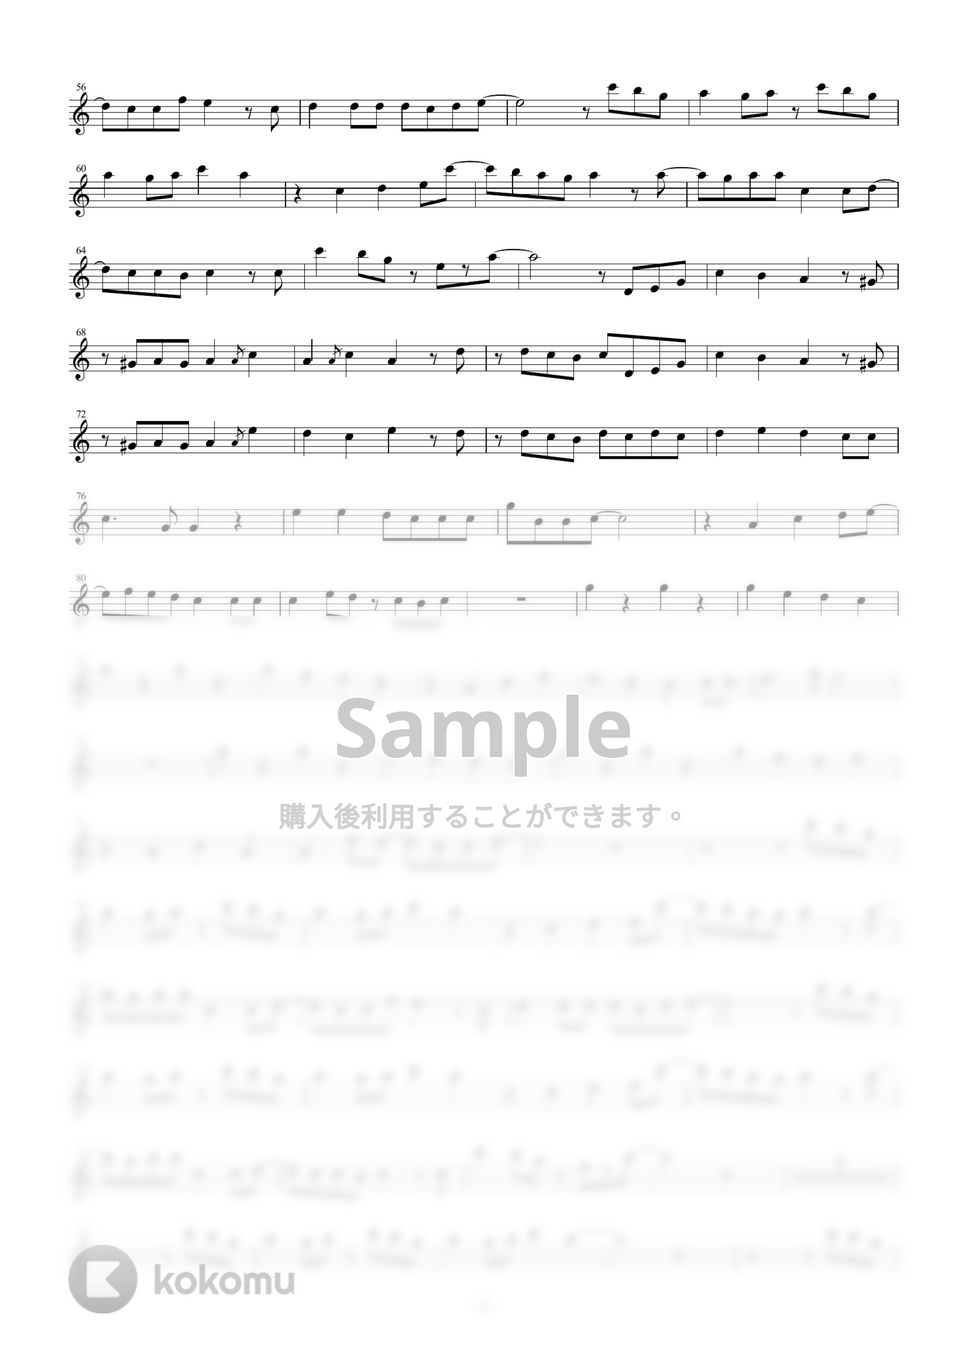 バルーン - 雨とペトラ (in B♭) by y.shiori